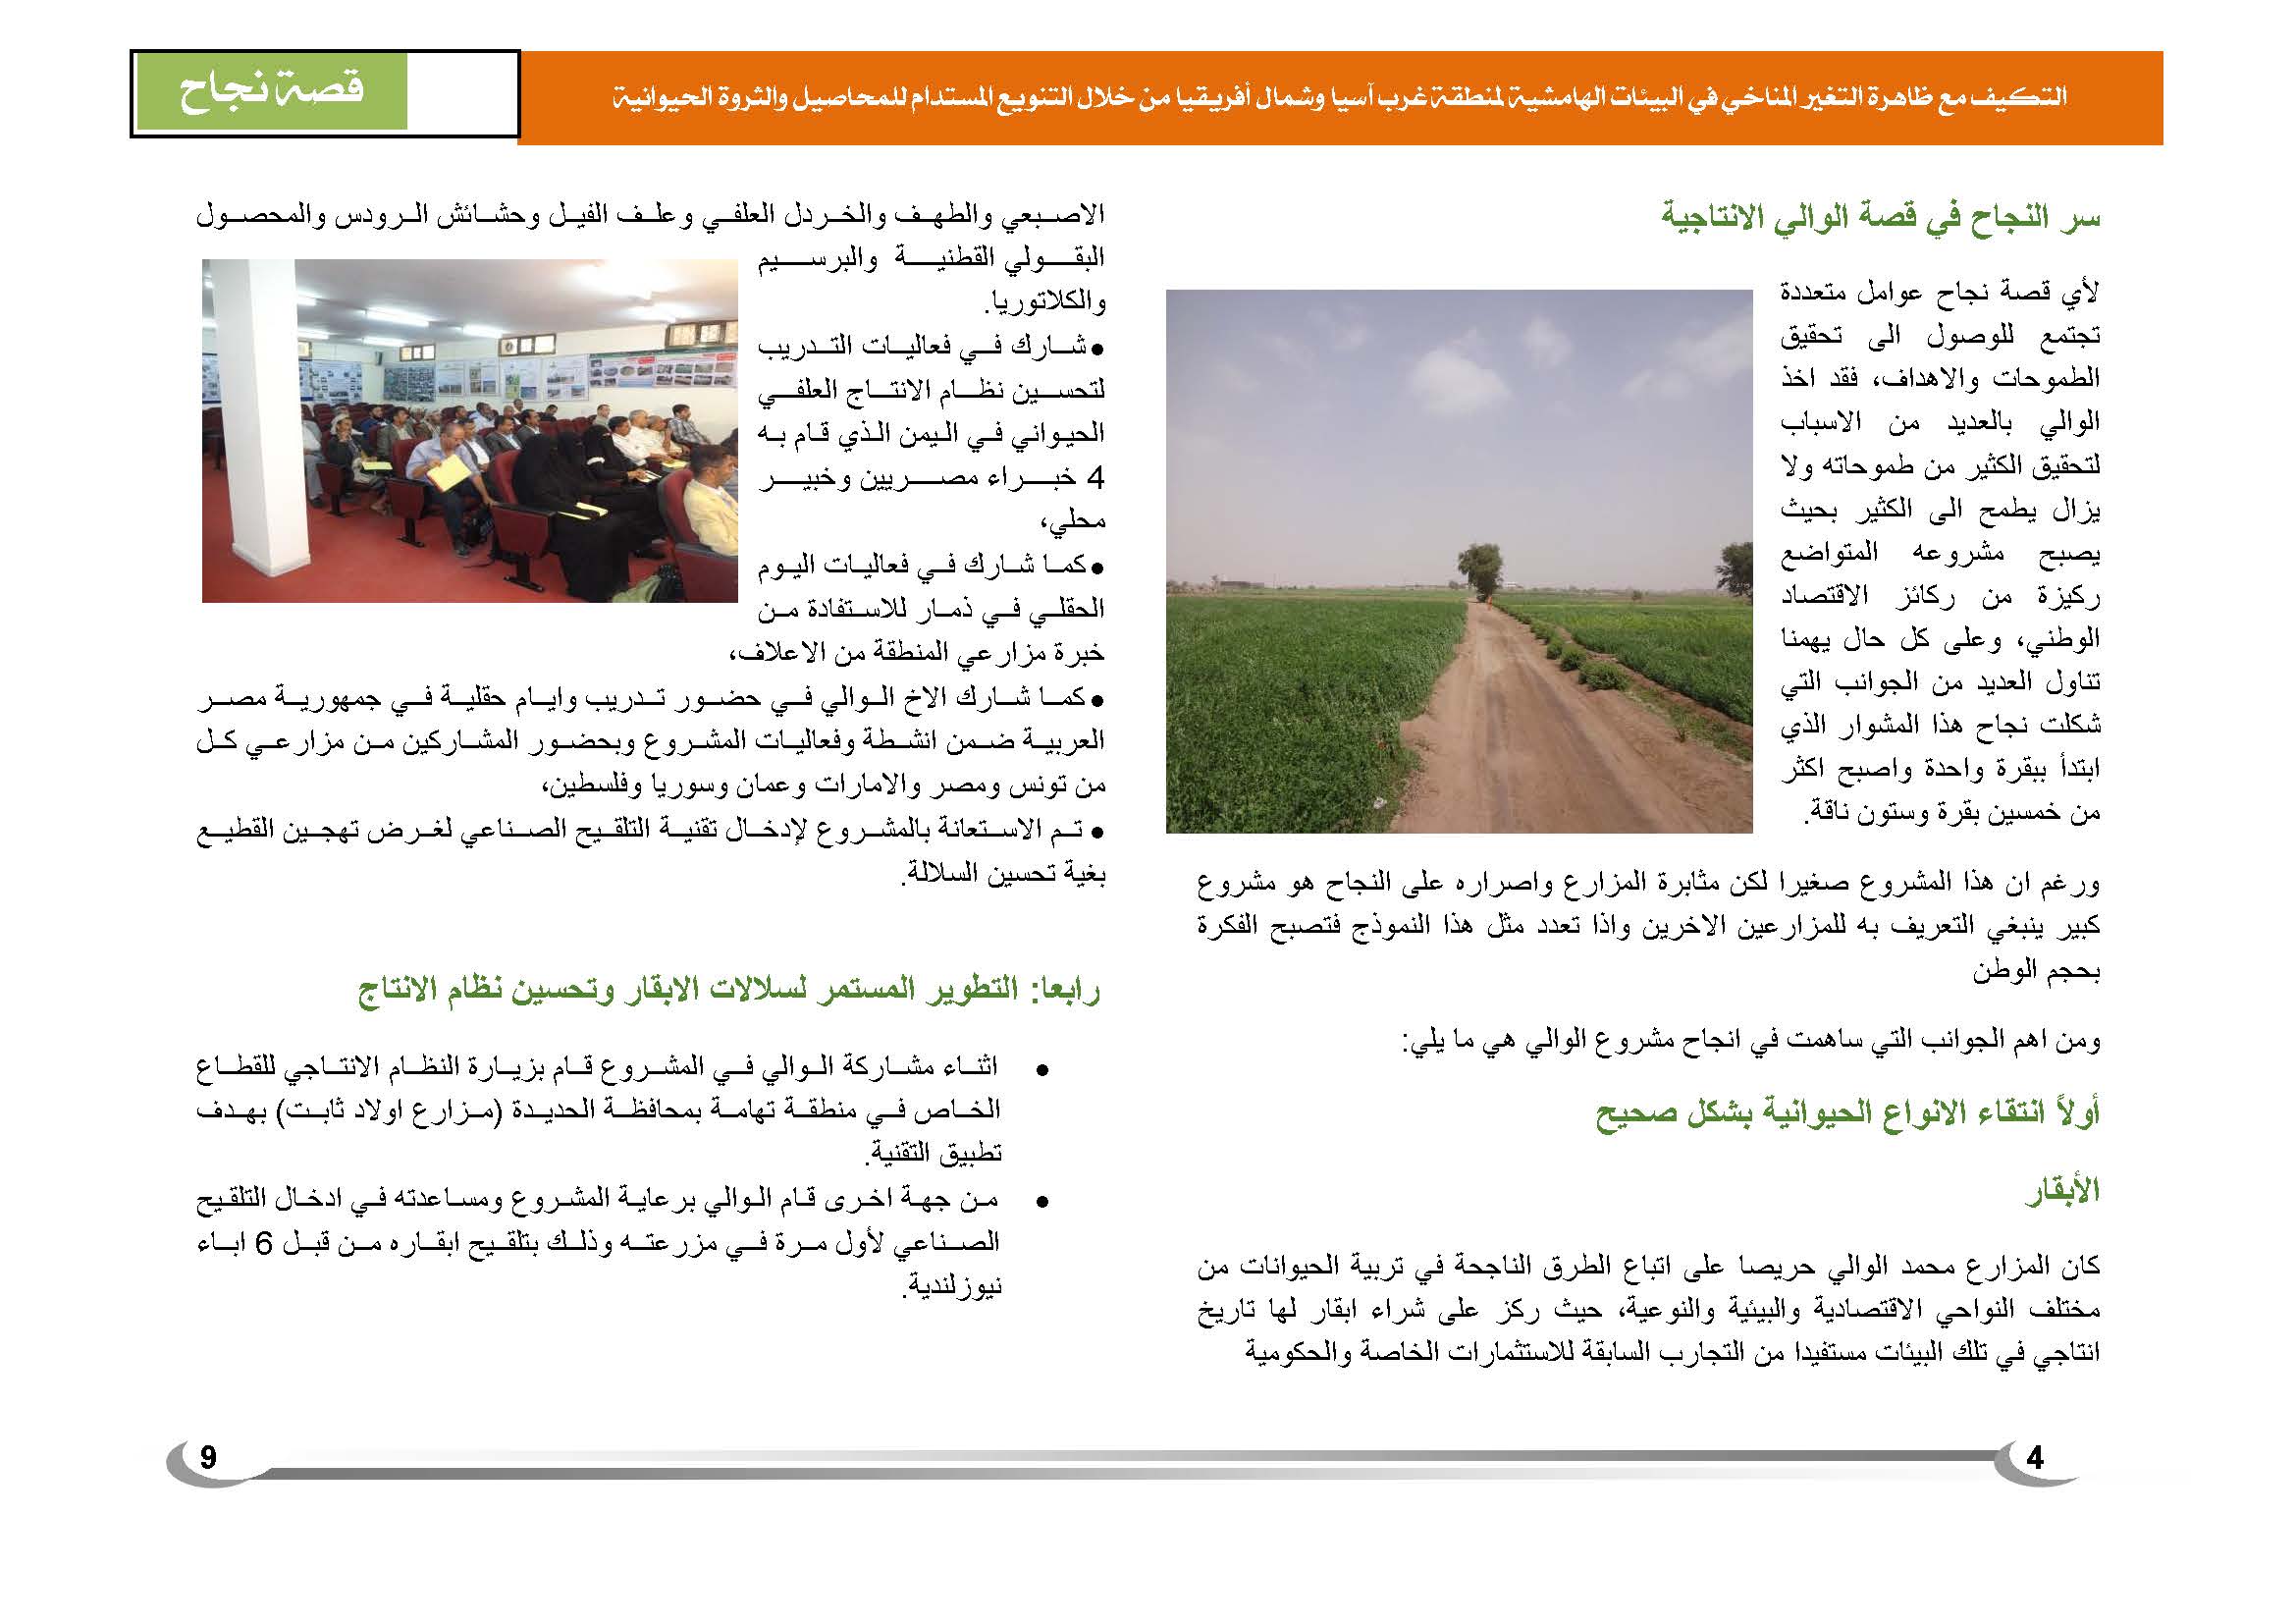 قصة نجاح في الإنتاج الزراعي في اليمن (1)_Page_5